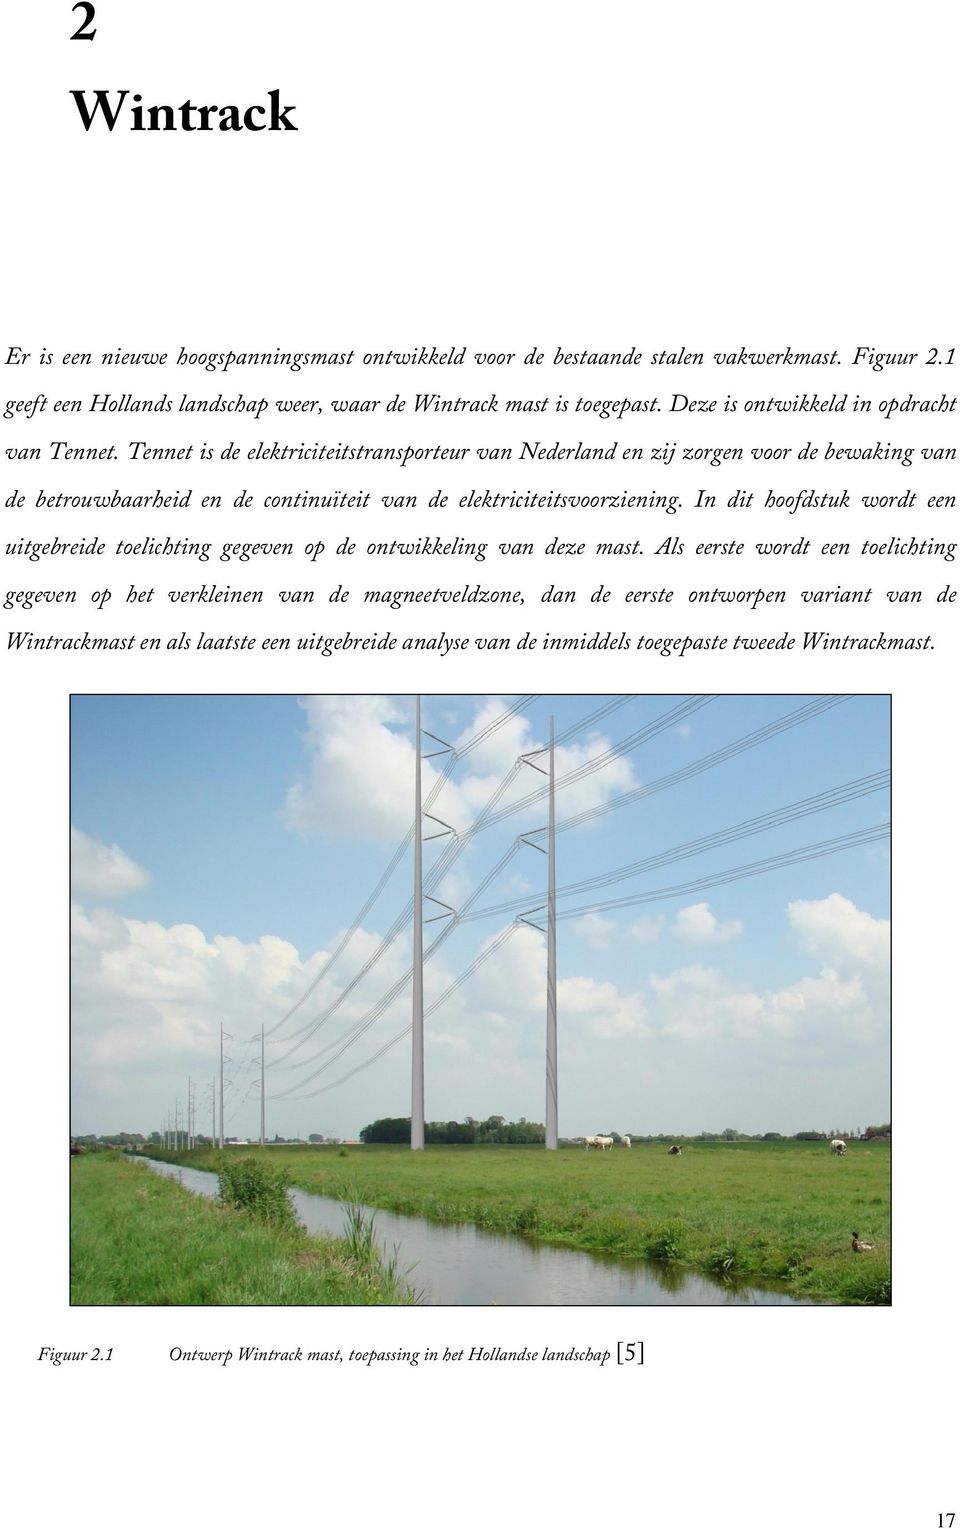 Tennet is de elektriciteitstransporteur van Nederland en zij zorgen voor de bewaking van de betrouwbaarheid en de continuïteit van de elektriciteitsvoorziening.